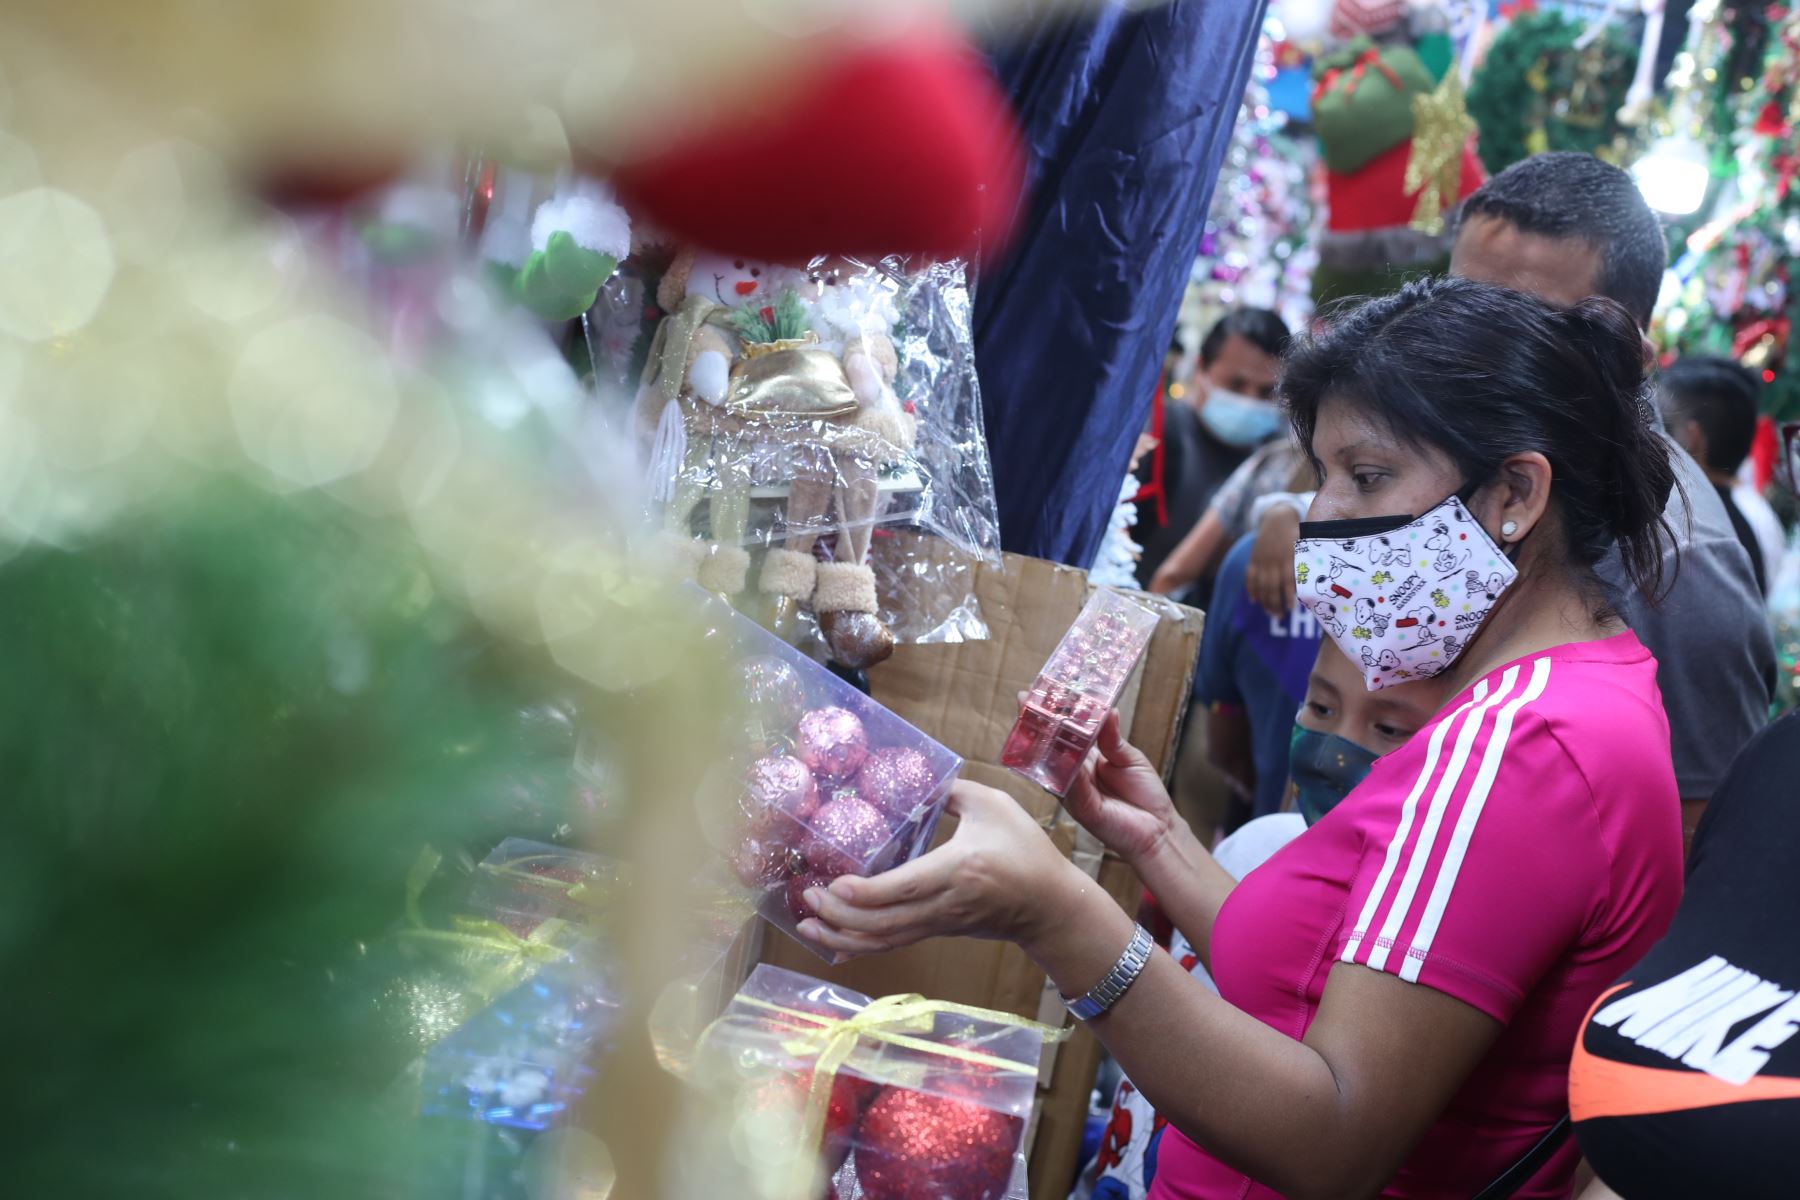 Cientos de personas asisten a Mesa Redonda para realizar sus compras por las fiestas de fin de año. Foto: ANDINA/Carla Patiño Ramírez